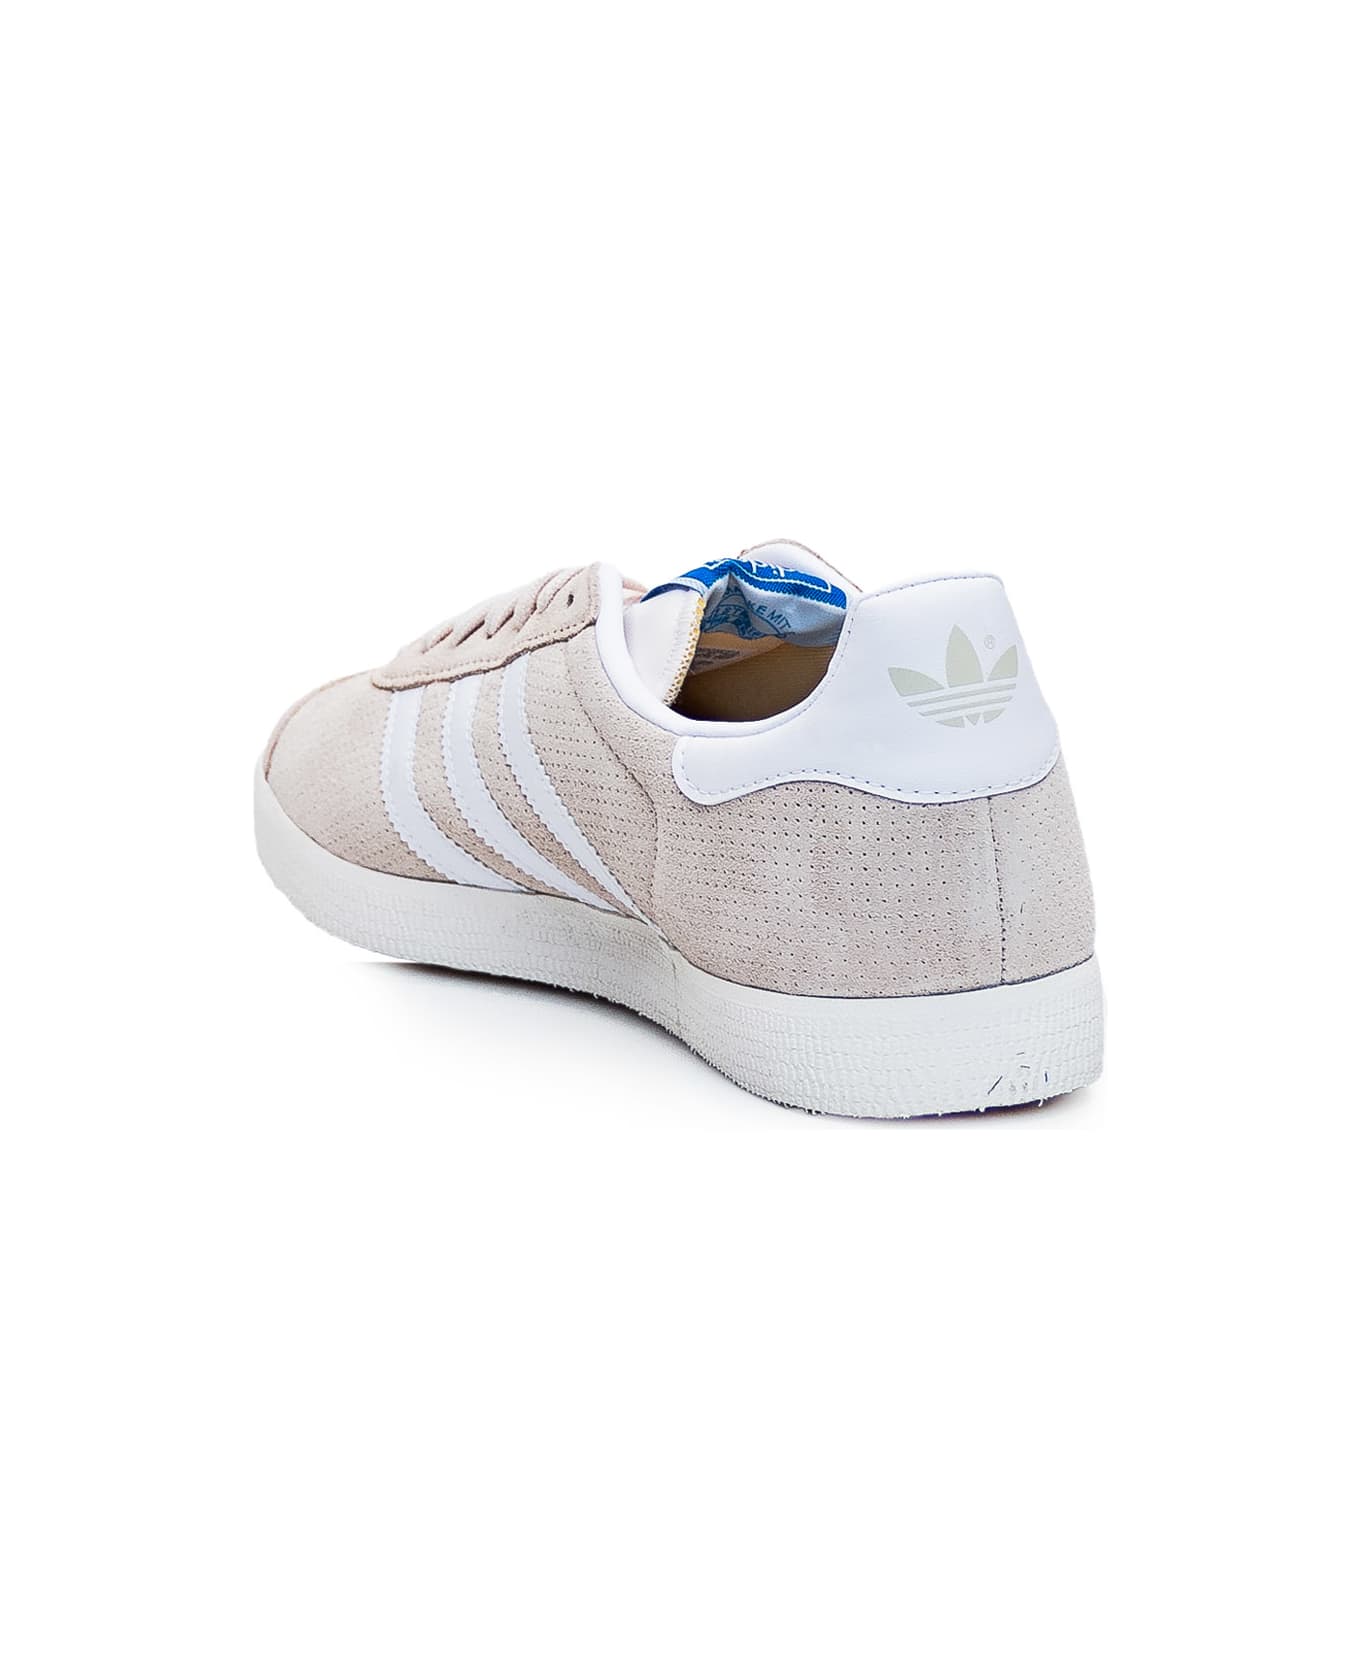 Adidas Originals Gazelle Sneaker - WONWHI/FTWWHT/CWHITE スニーカー